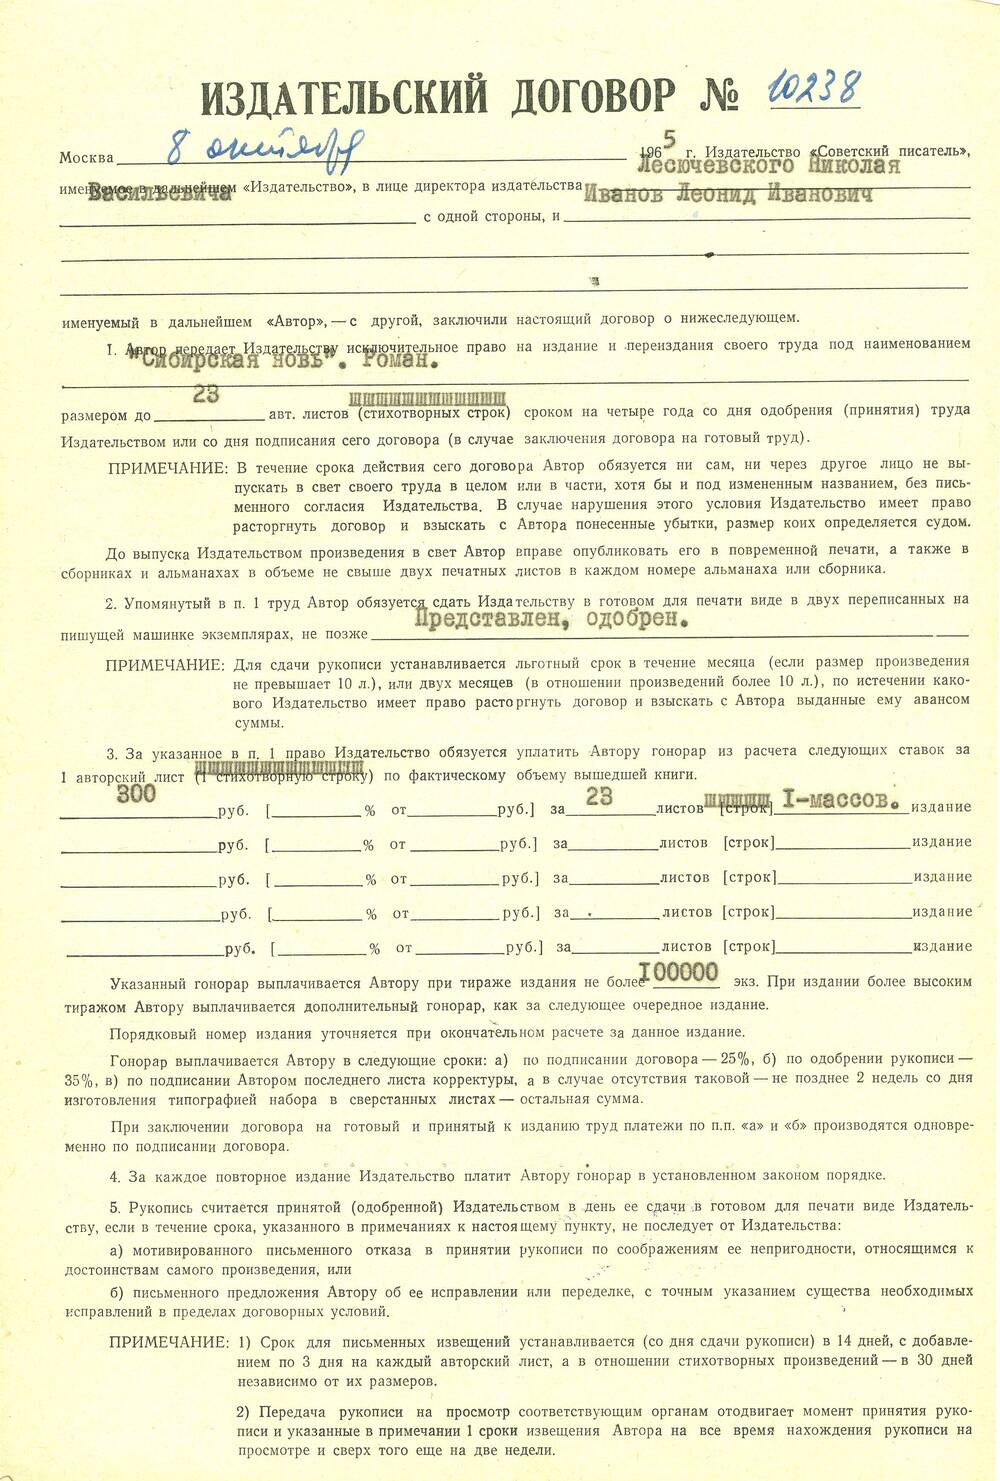 Договор издательский №10238 между издательством Советский писатель и Л. Ивановым